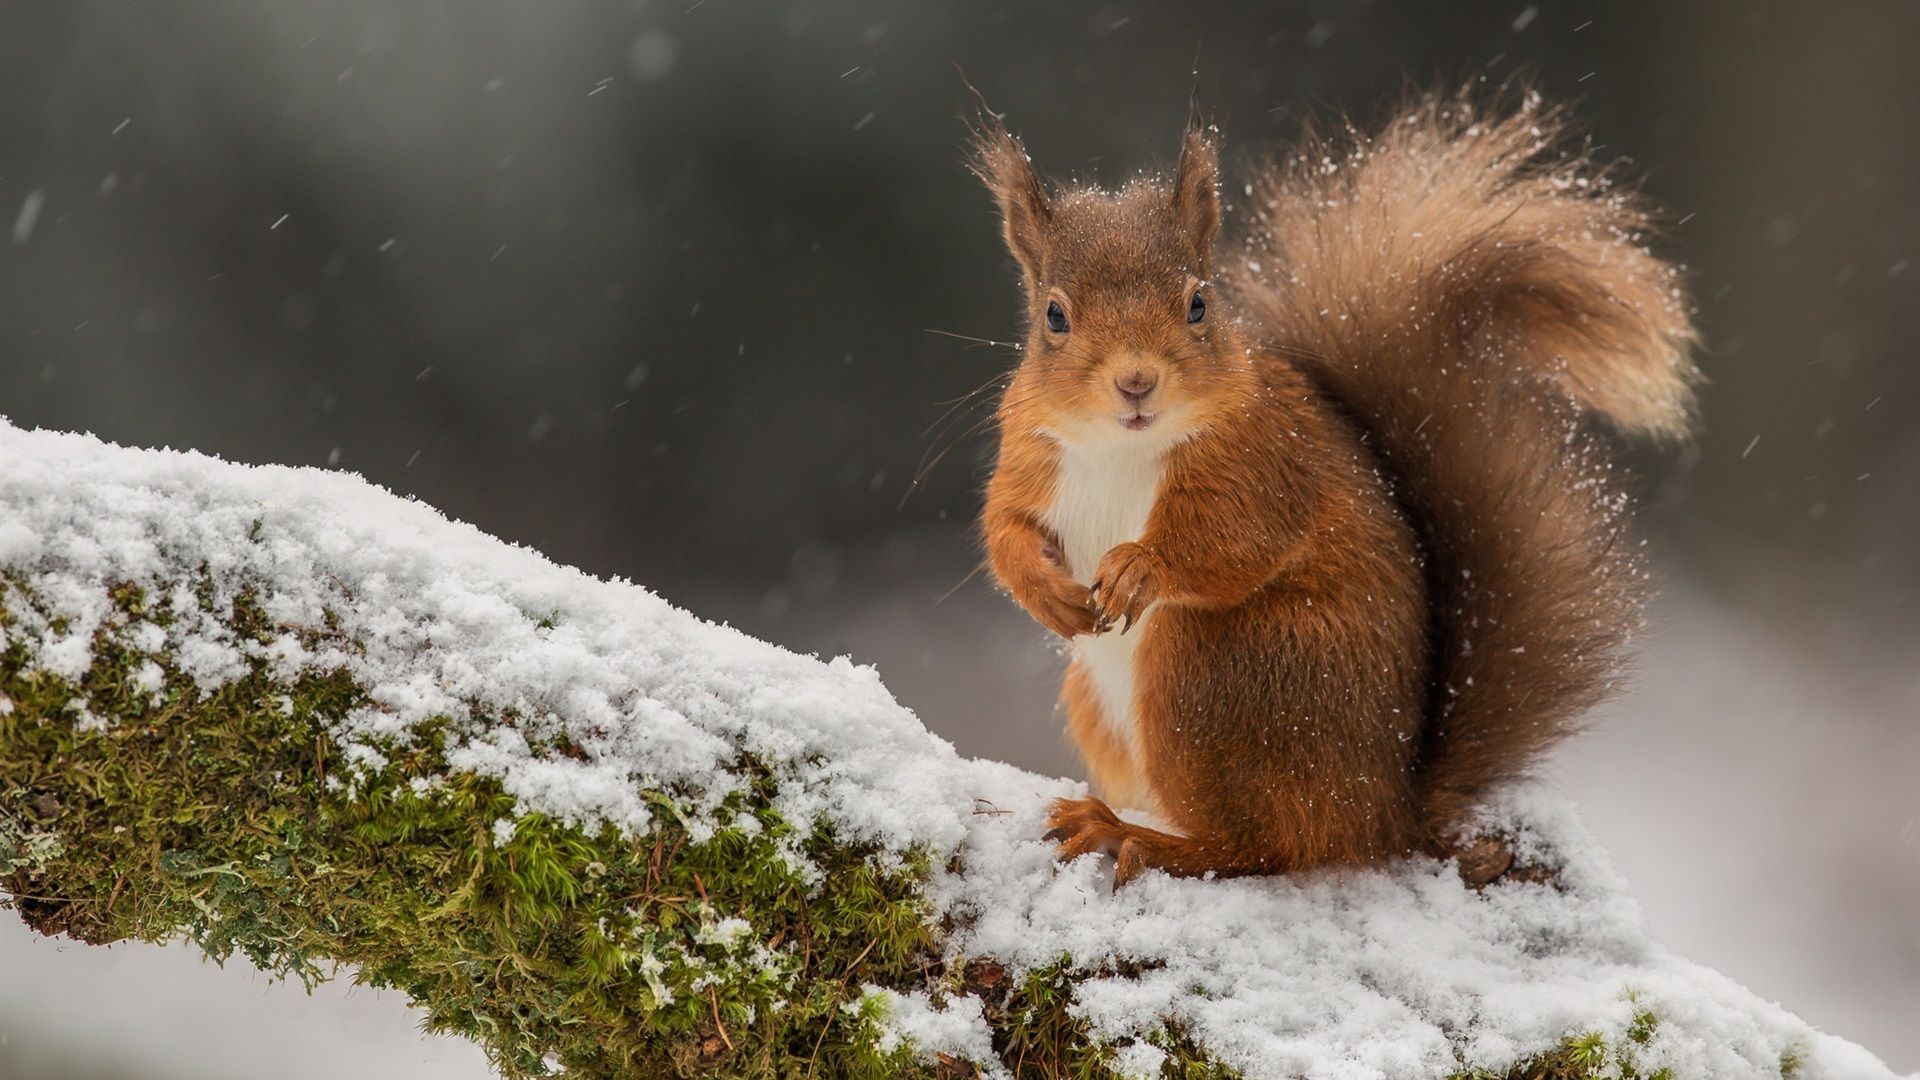  Winter Tiere Hintergrundbild 1920x1080. Eichhörnchen im Winter, Schnee, Moos 1920x1200 HD Hintergrundbilder, HD, Bild